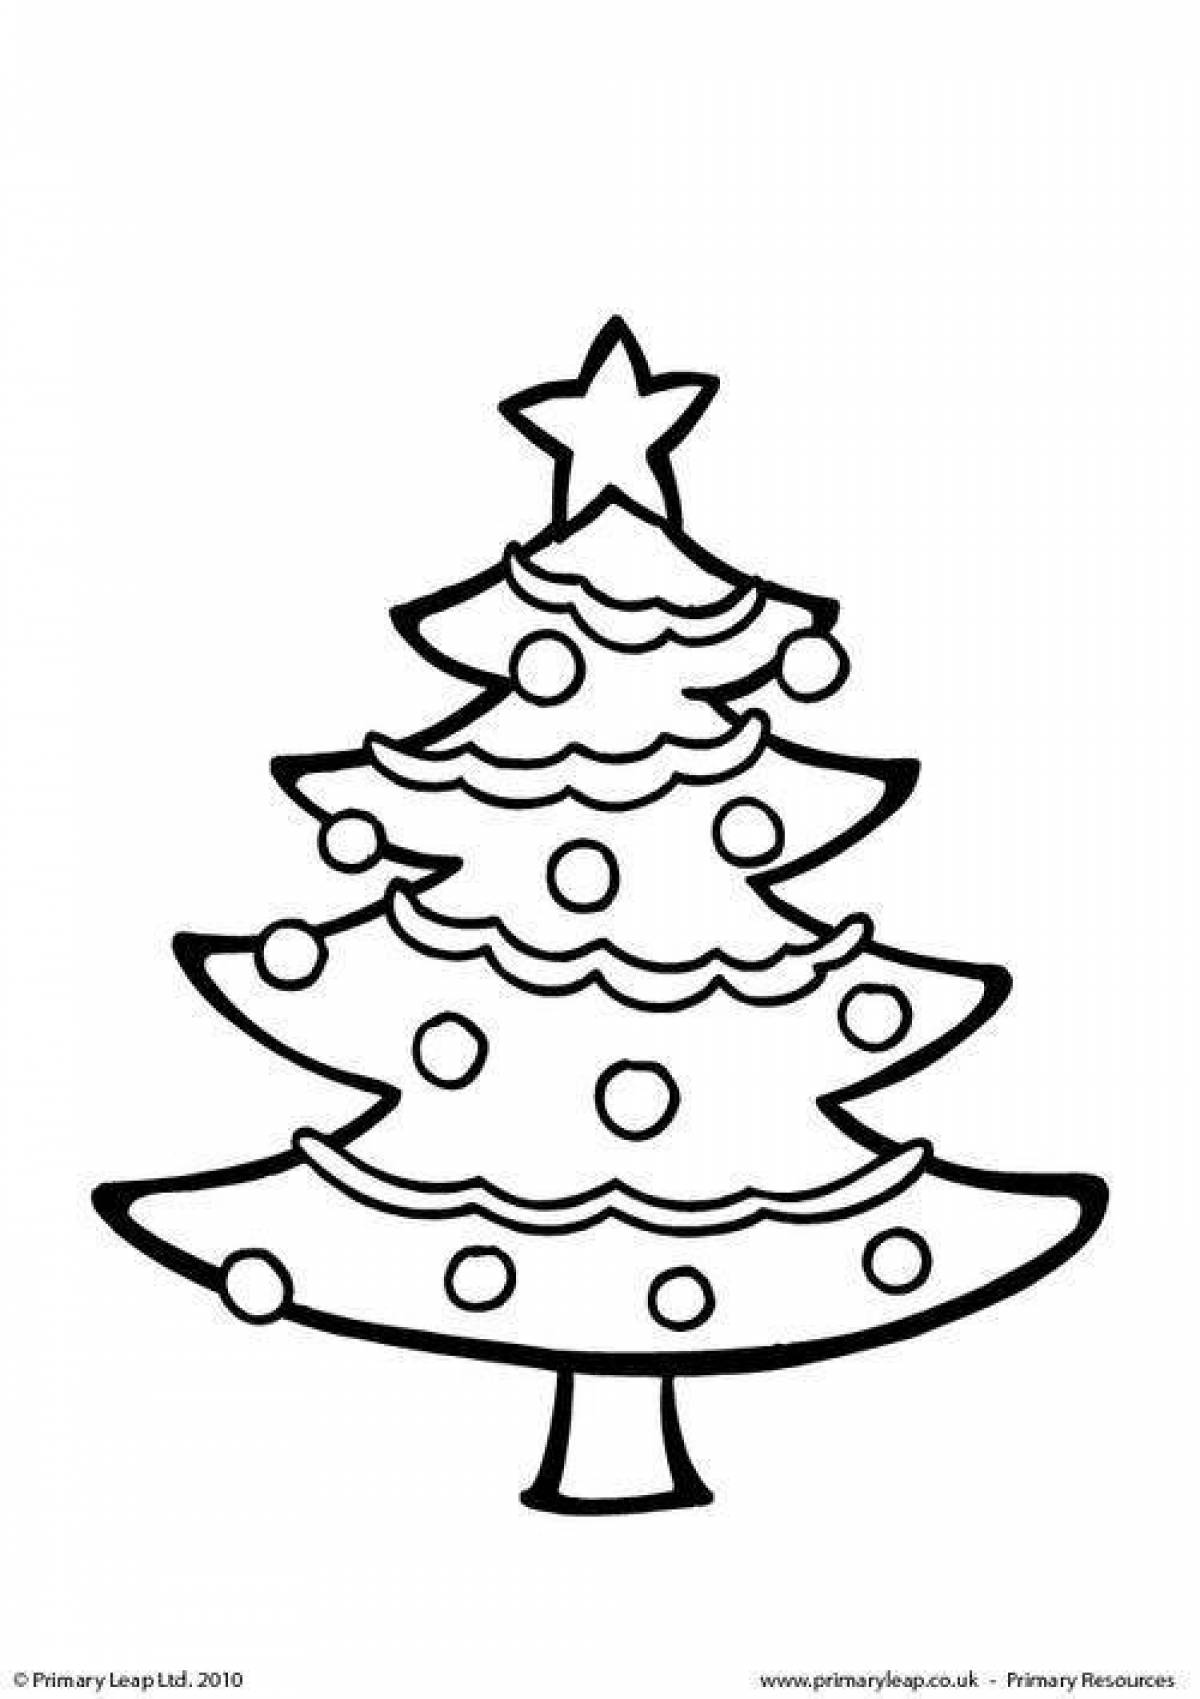 Раскраска сияющая новогодняя елка для детей